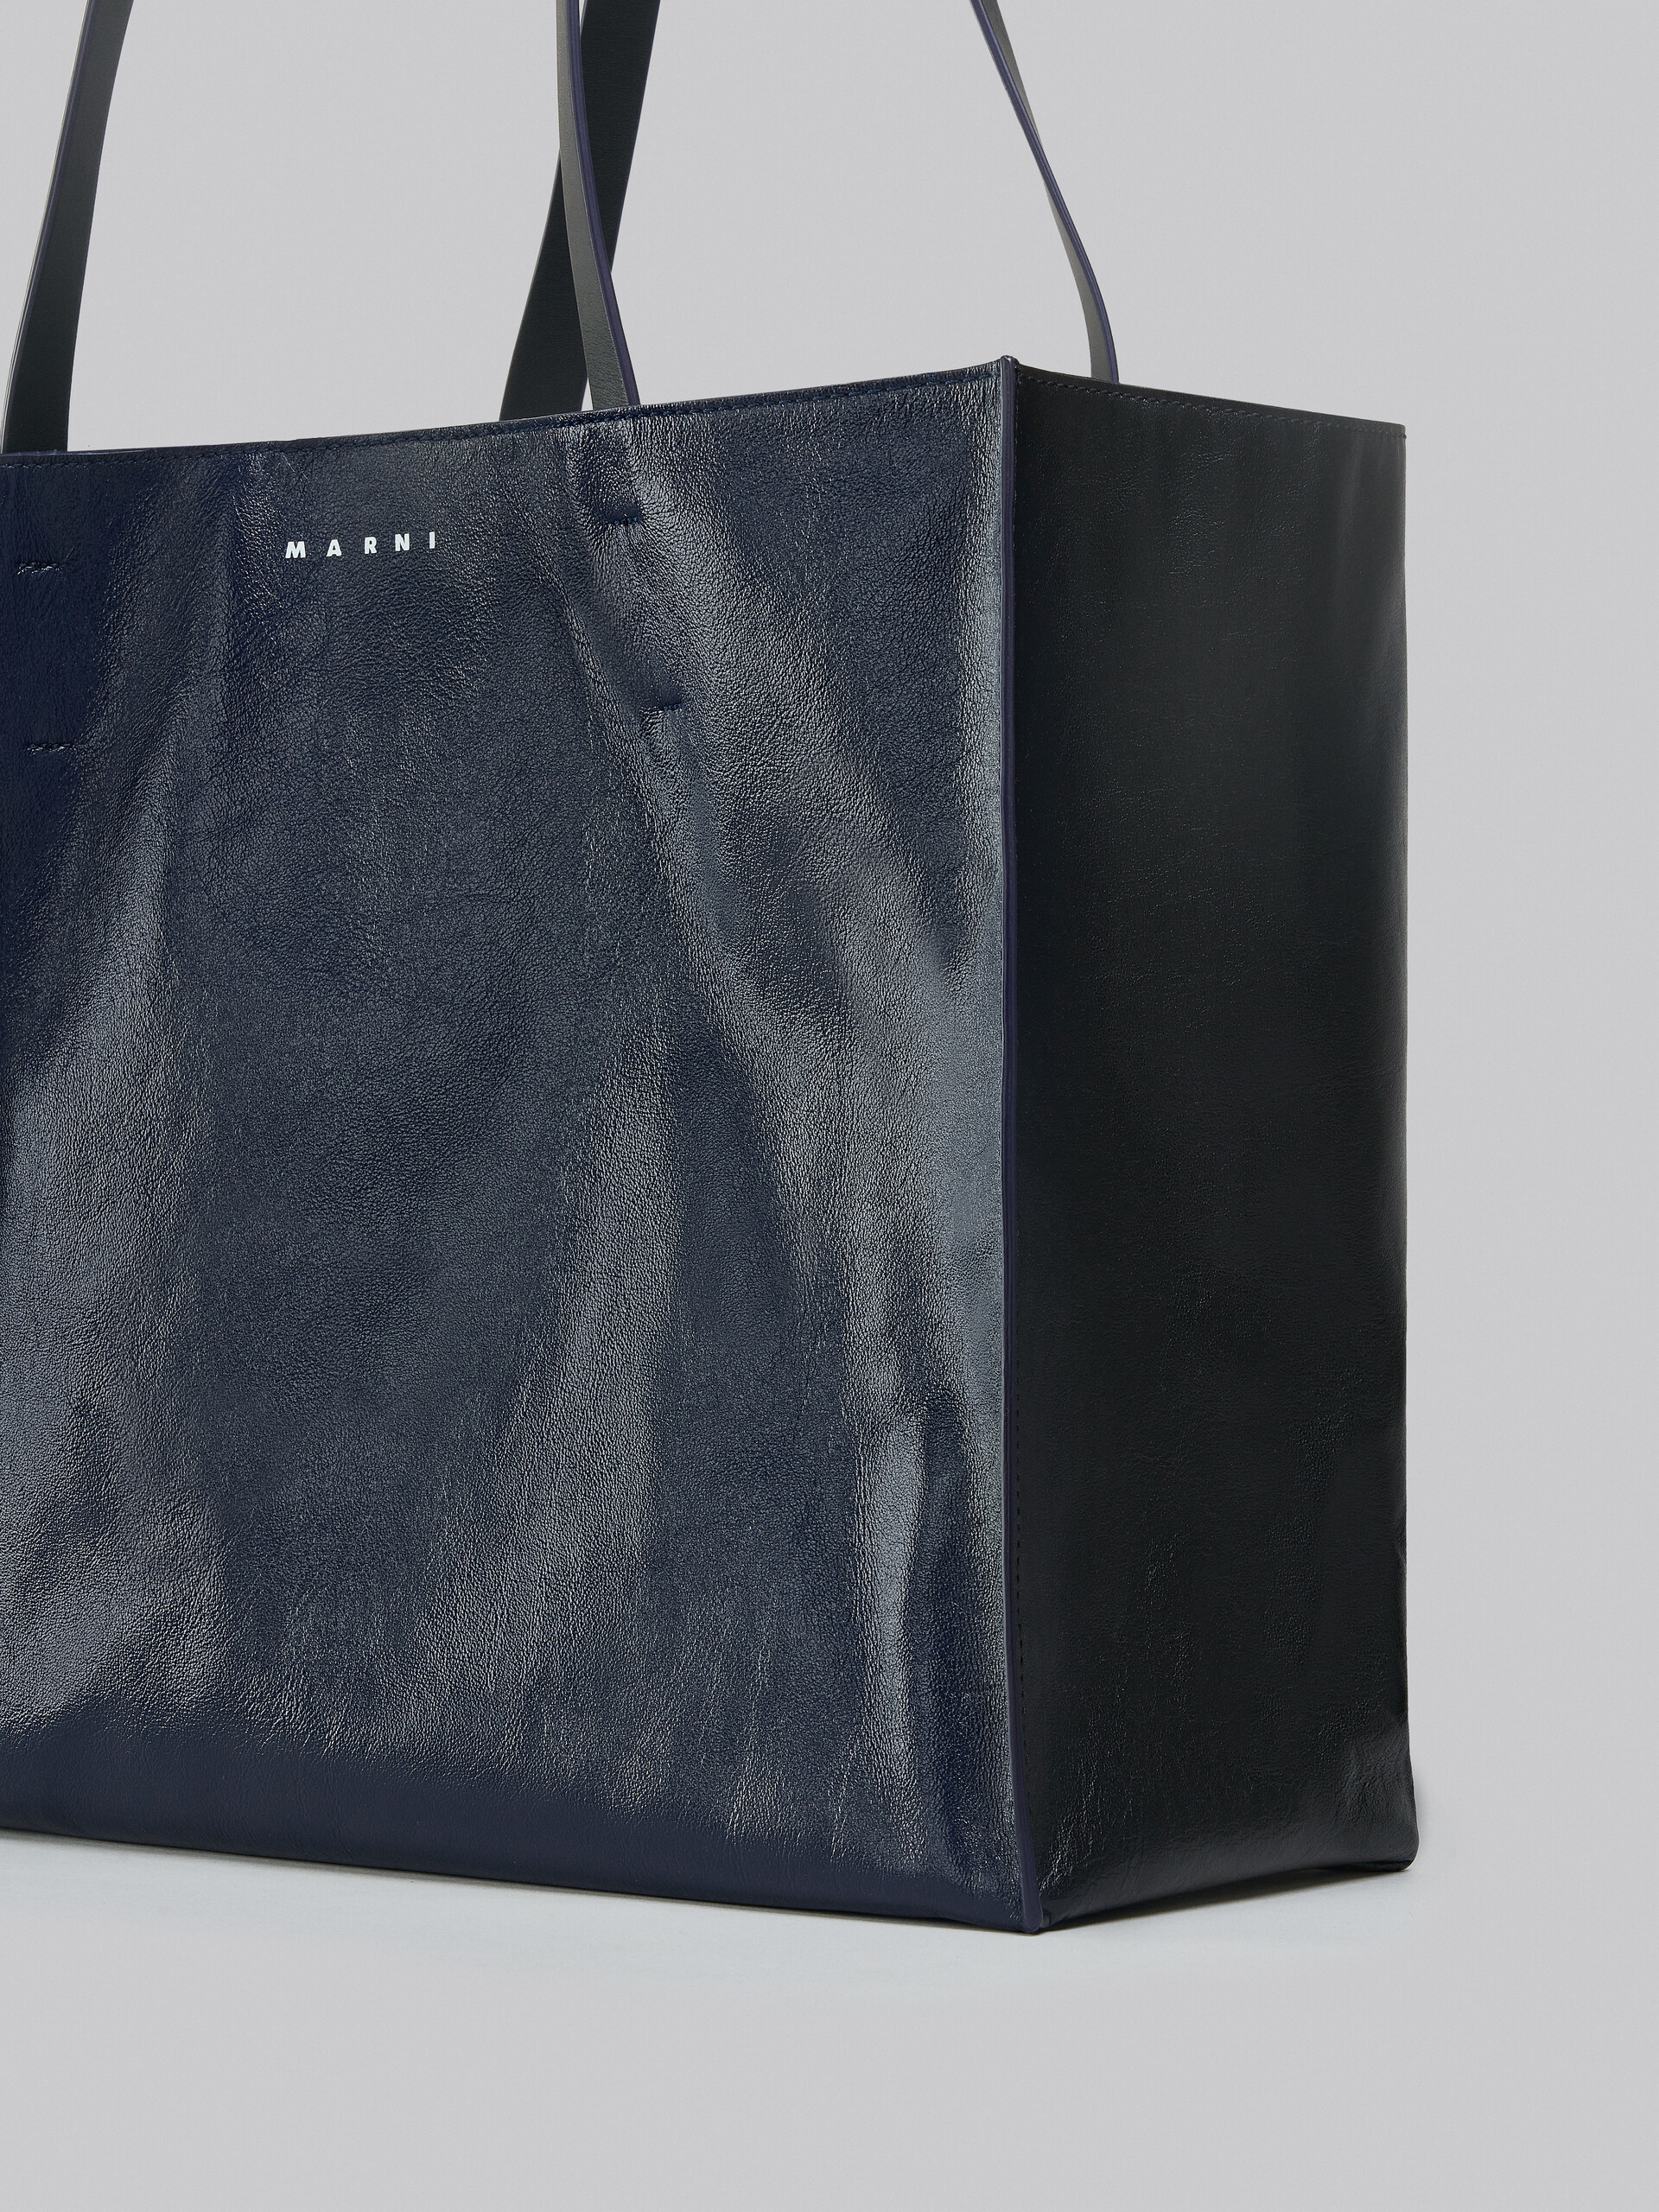 Tasche Museo Soft aus Leder in Blau und Schwarz - Shopper - Image 5